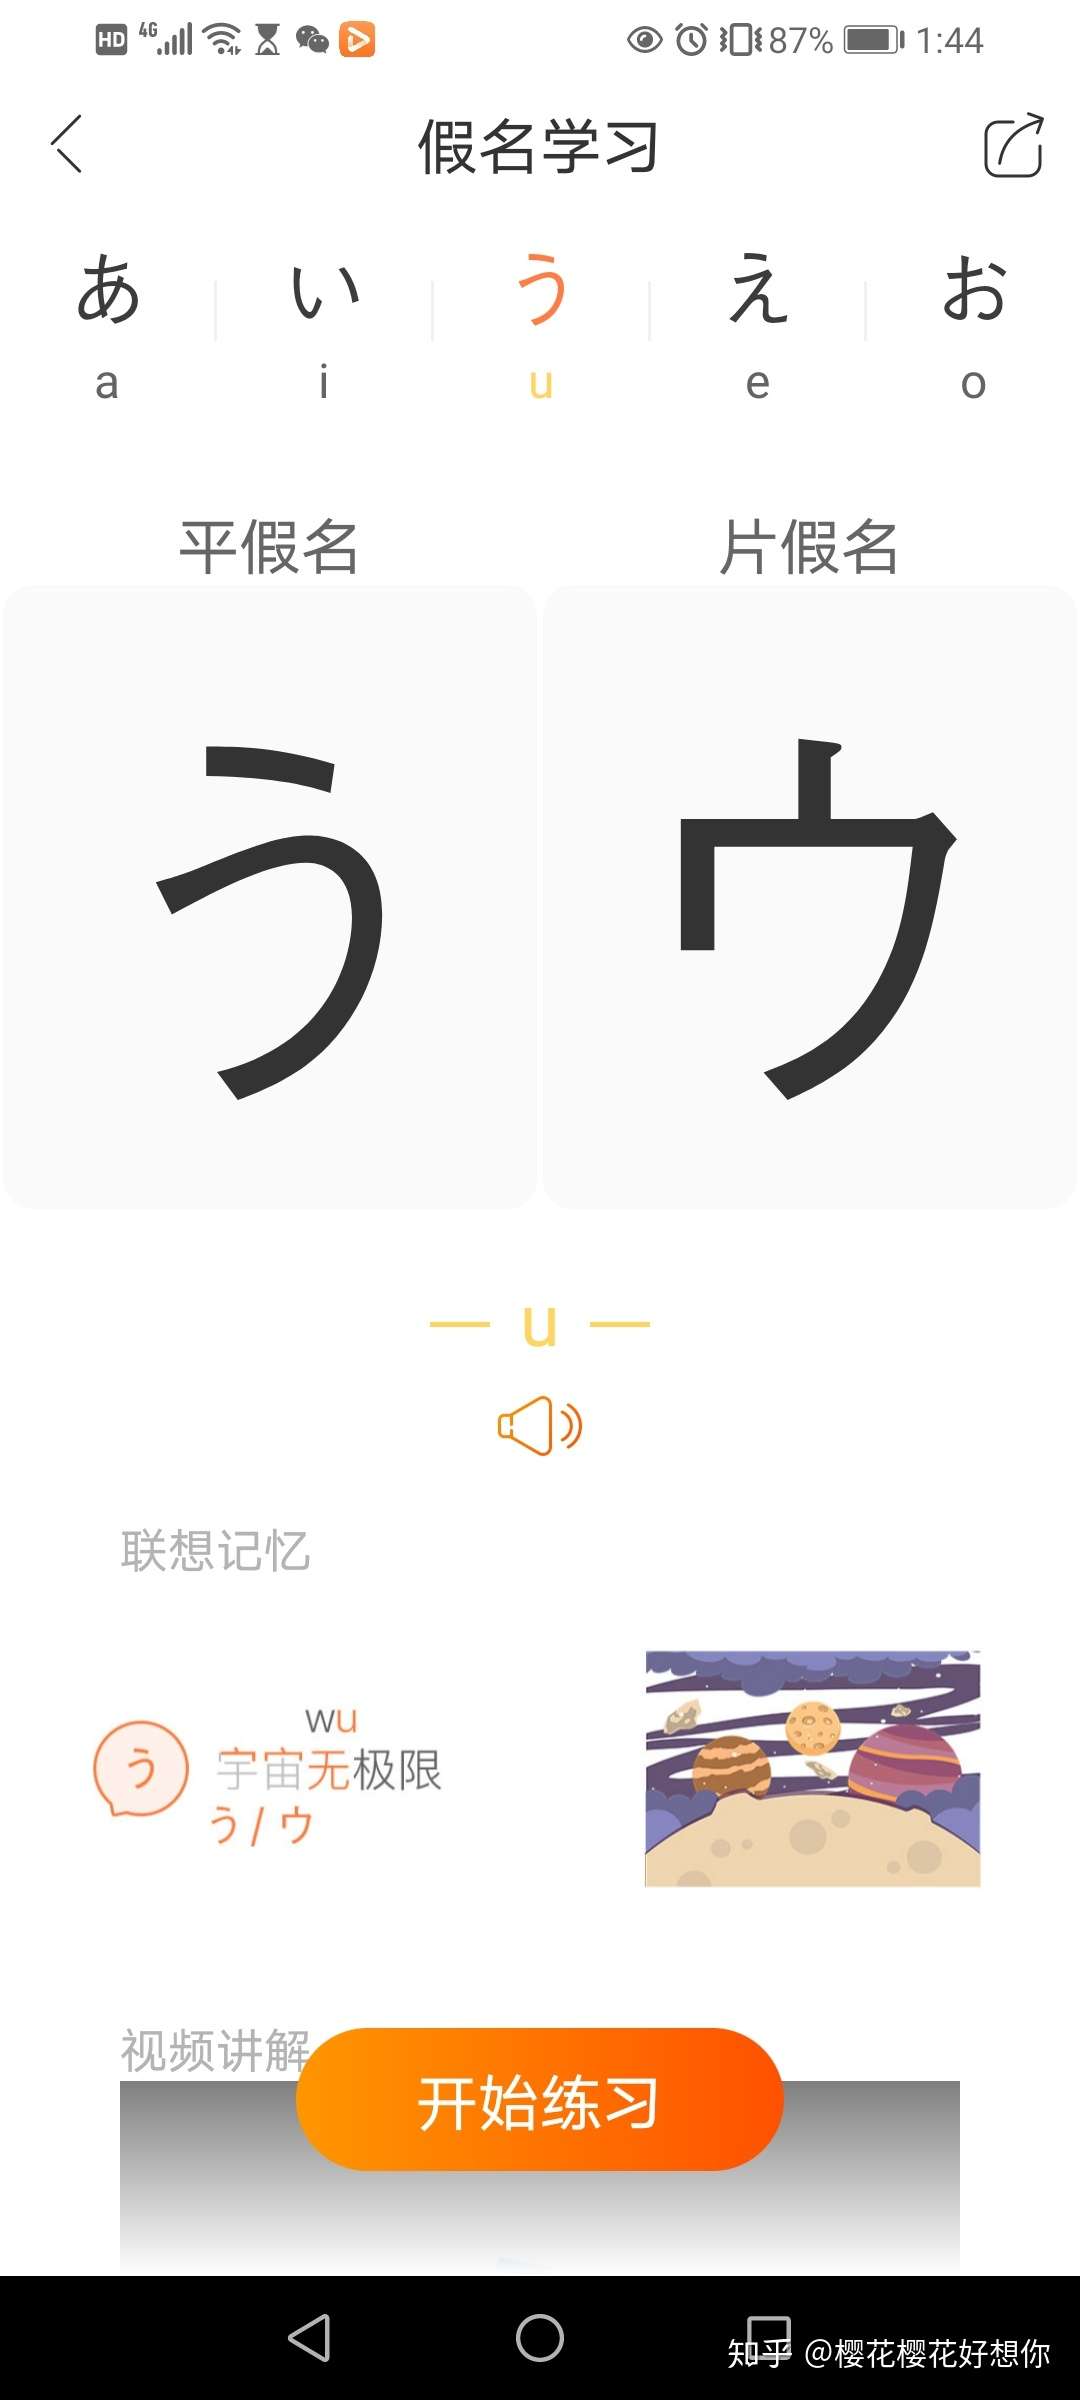 日语小白自学分享 如何快速有效的自学日语 知乎